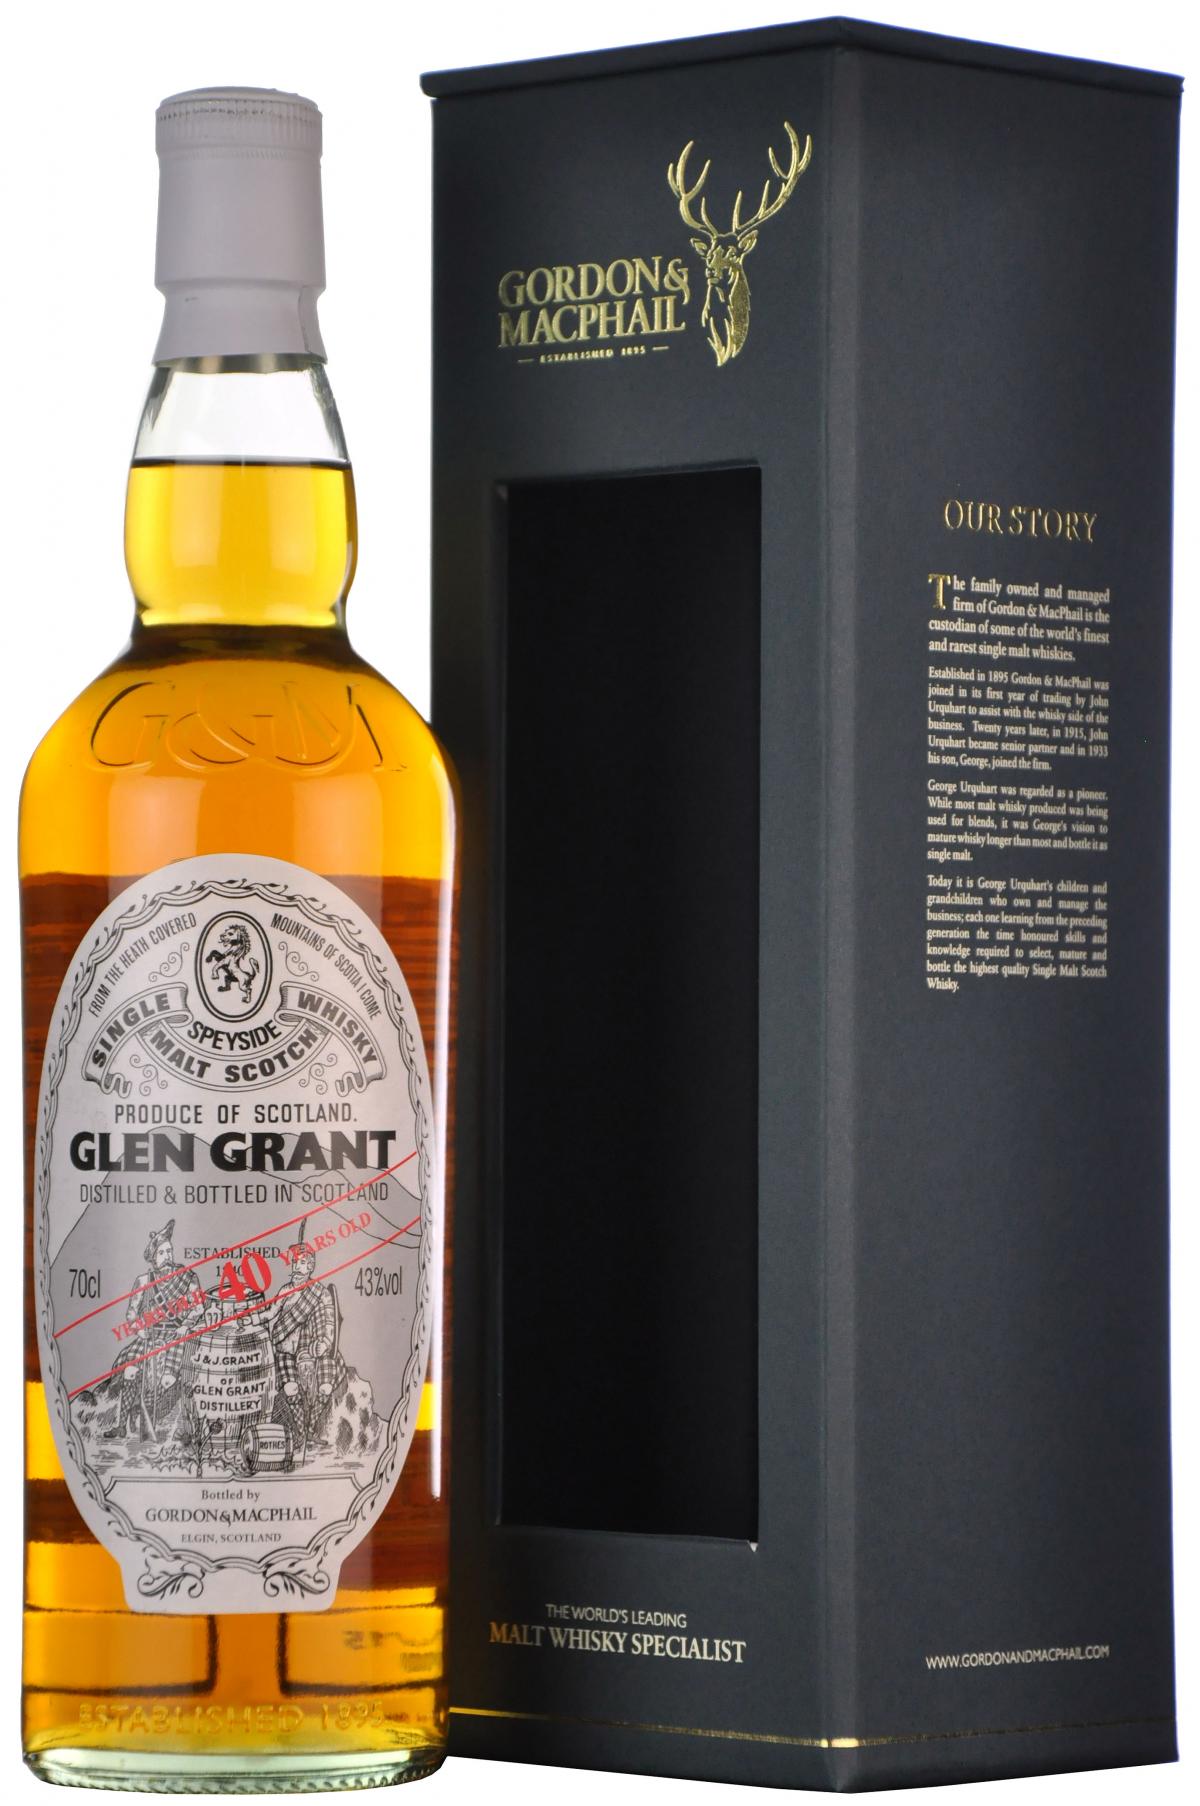 glen grant 40 year old, gordon & macphail, speyside single malt scotch whisky